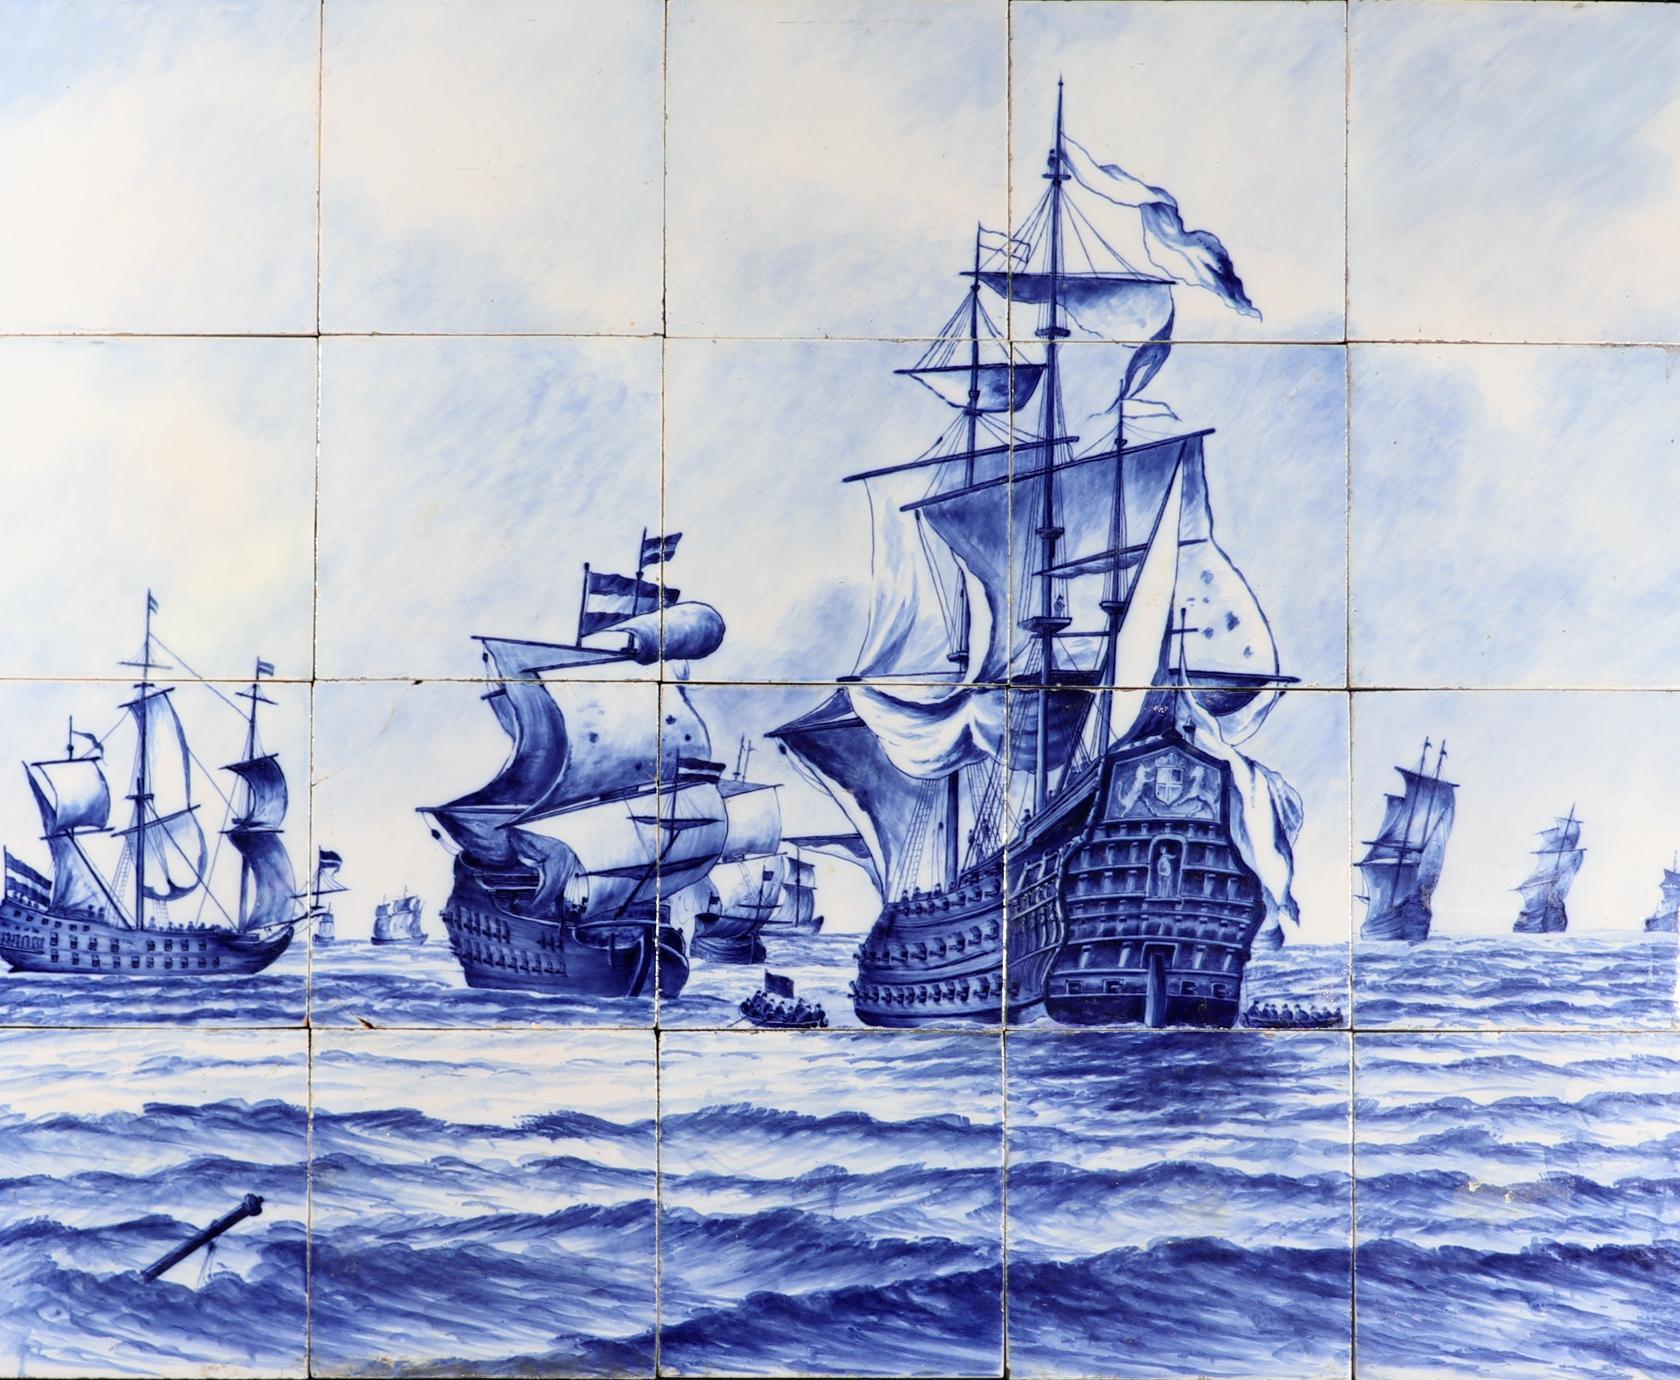 Carreau hollandais de Delft, grande image d'une flotte de navires,
19ème siècle

Le tableau de 20 carreaux bleu et blanc en faïence étamée de Delft représente une flotte hollandaise de navires en haute mer.  Onze navires de guerre différents sont